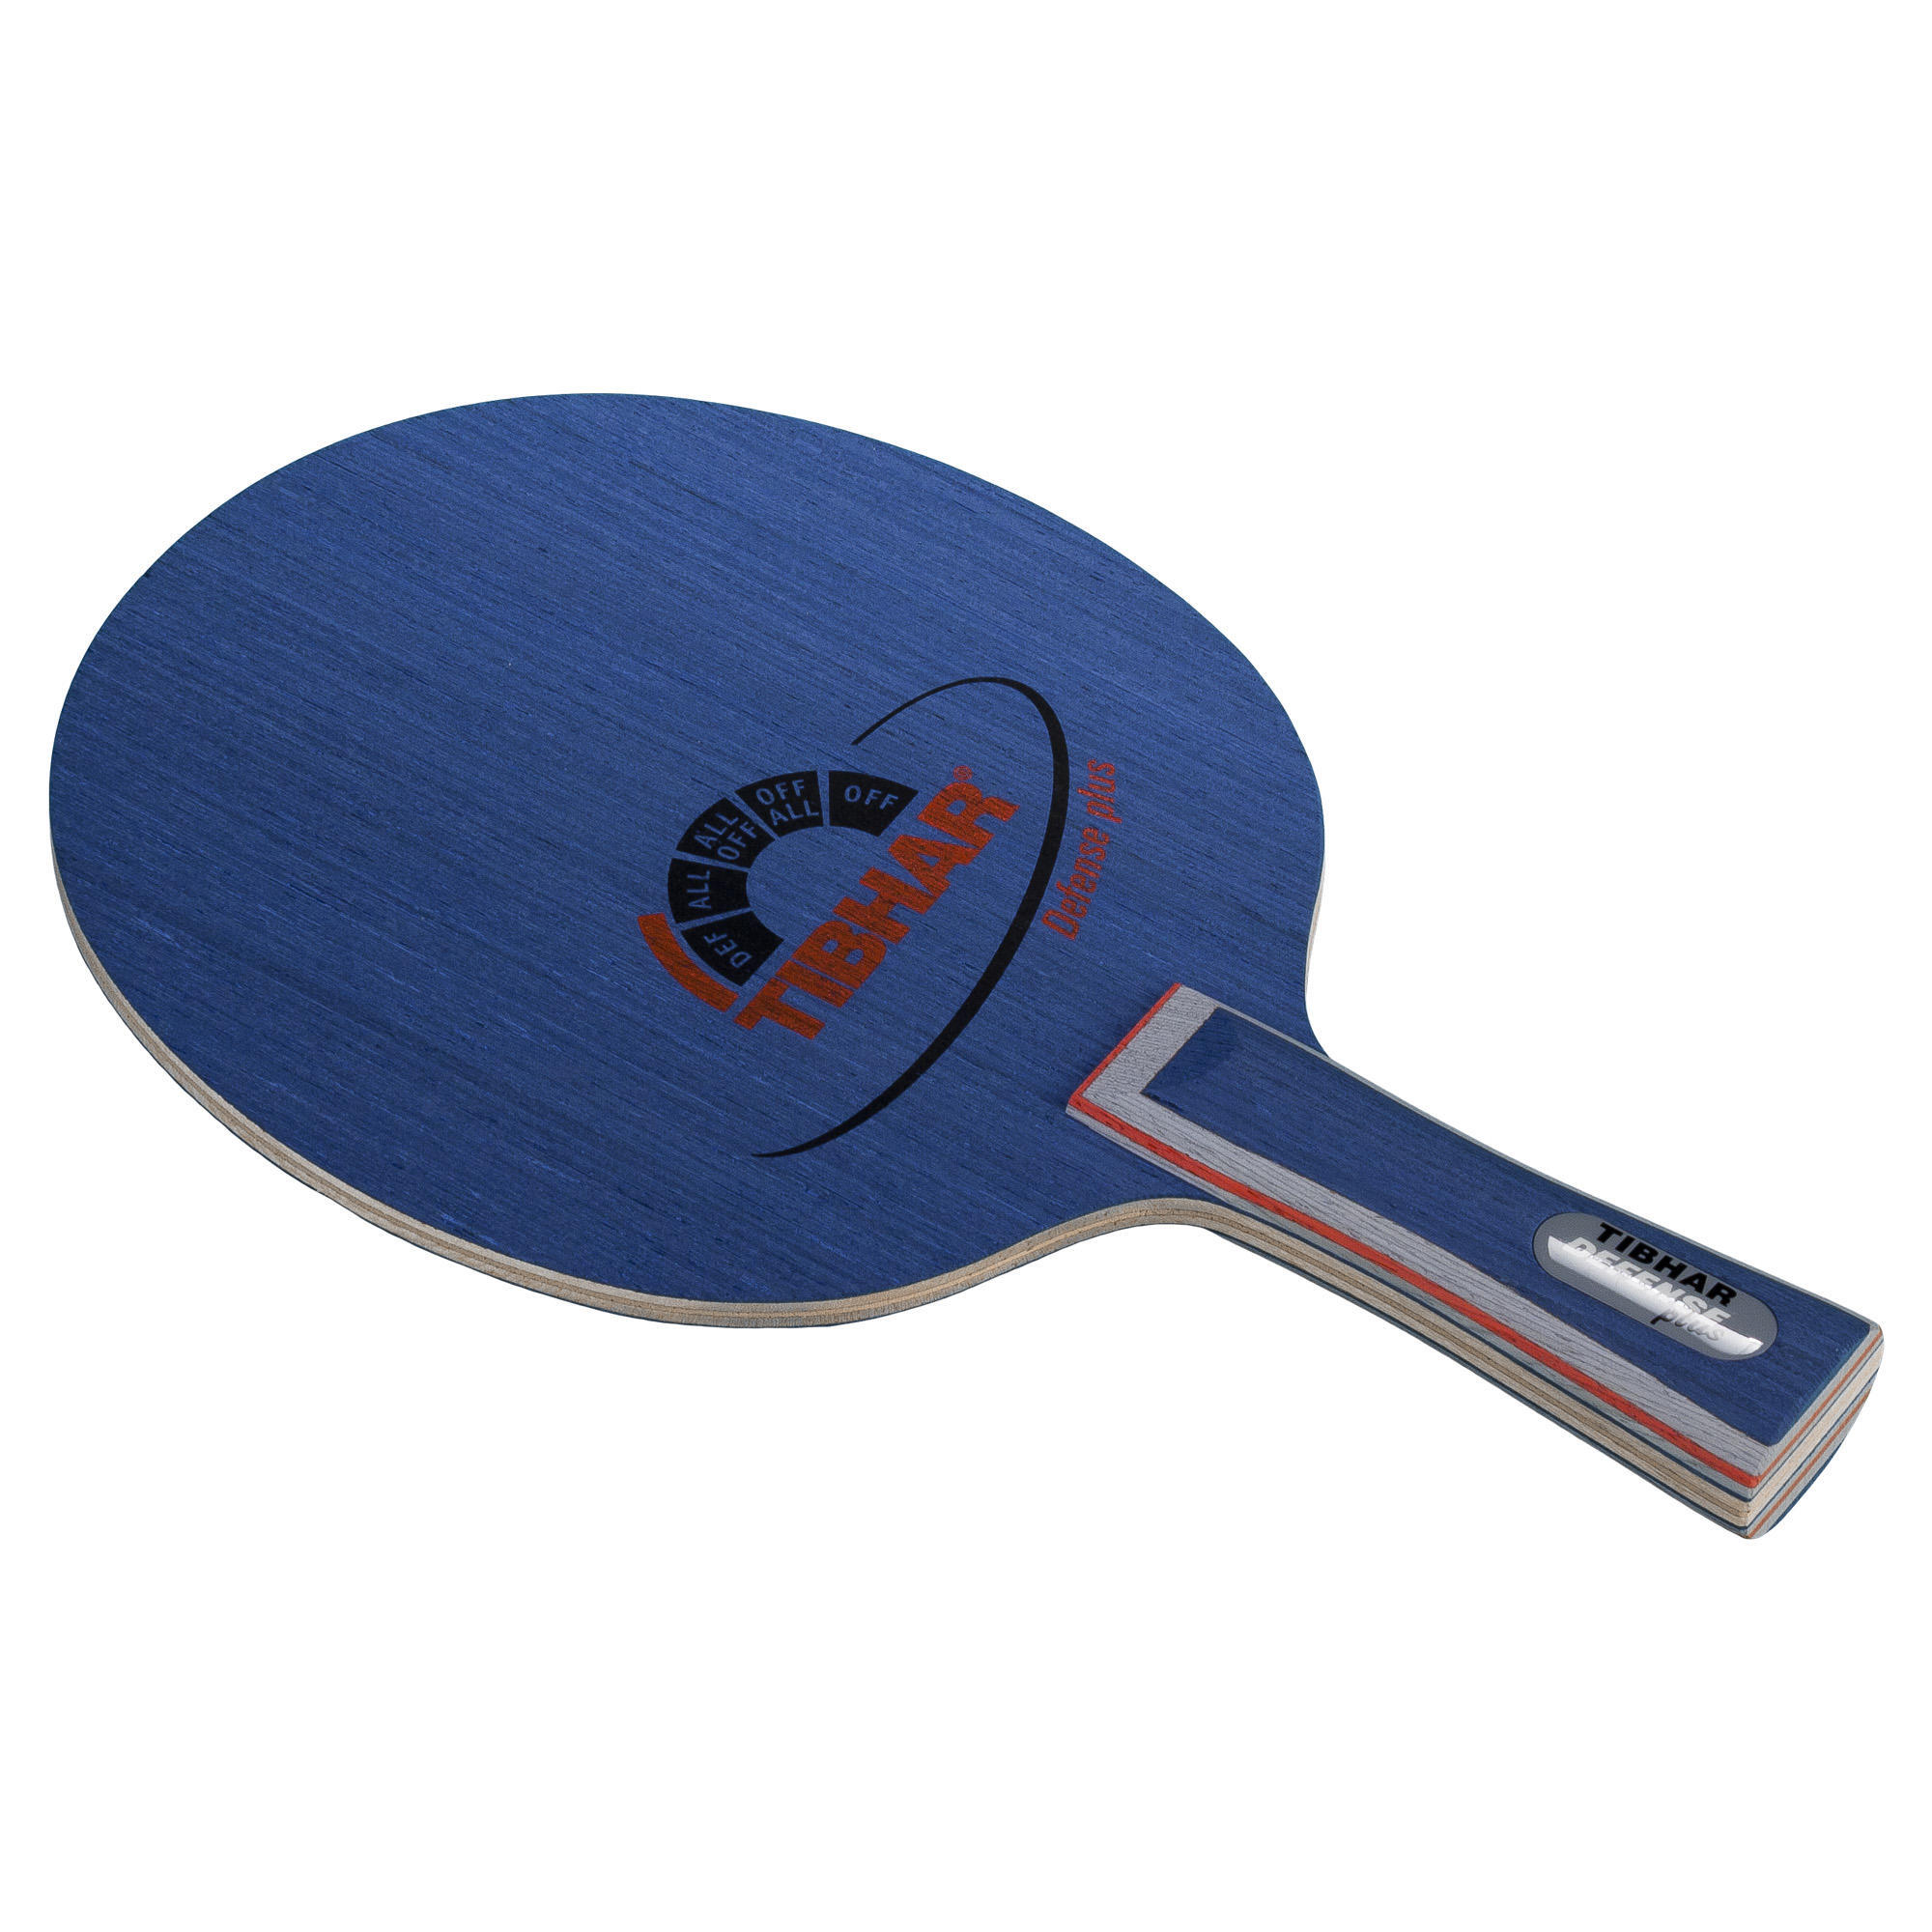 Основание ракетки для настольного тенниса Defensive Plus TIBHAR, синий